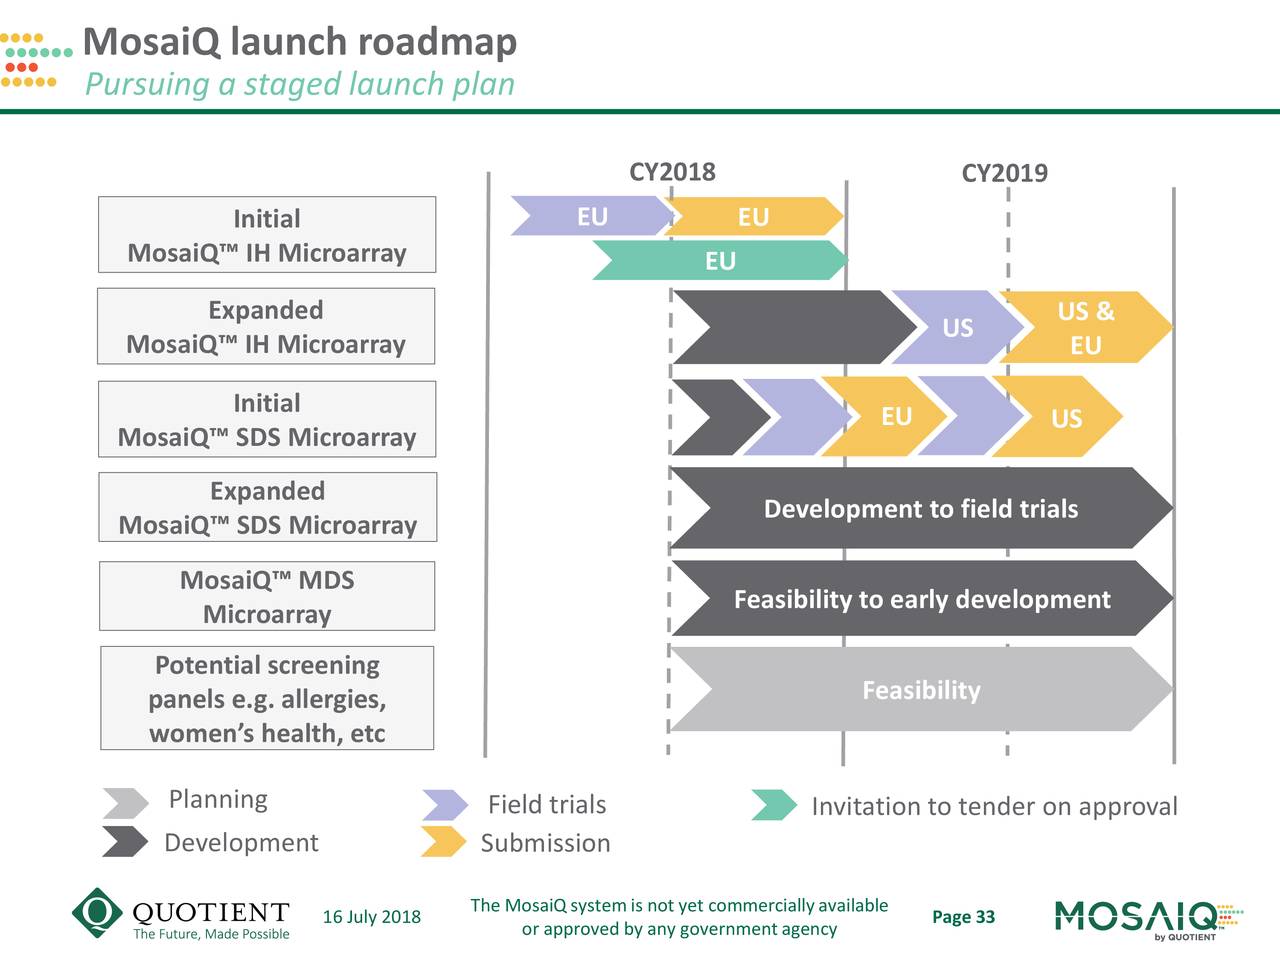 MosaiQ launch roadmap